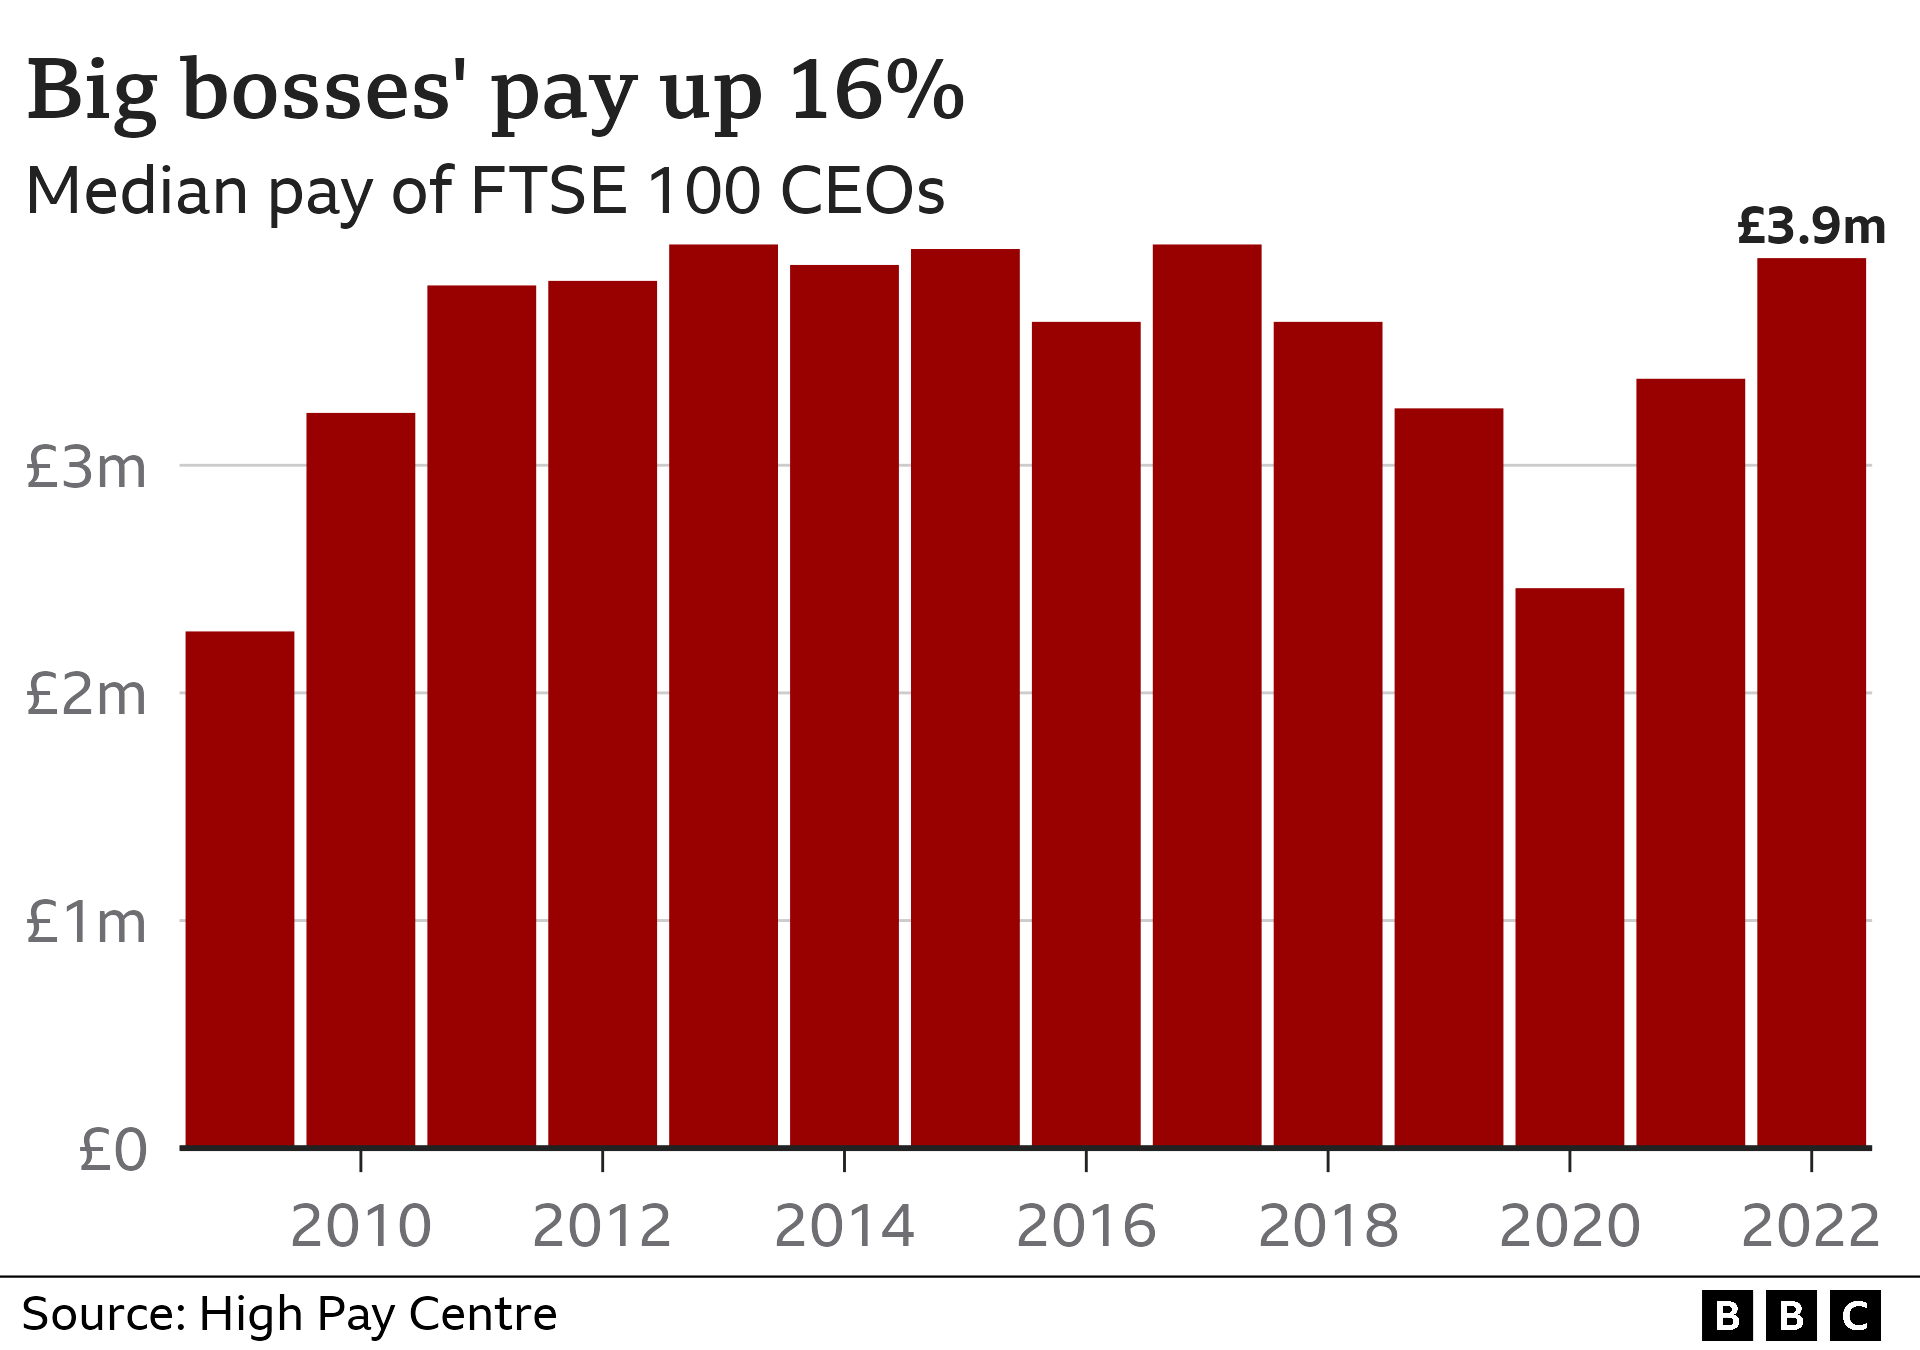 Гистограмма, показывающая медианную зарплату руководителей компаний из индекса FTSE 100, которая выросла с 3,38 млн фунтов стерлингов в 2021 году до 3,91 млн фунтов стерлингов в 2022 году.